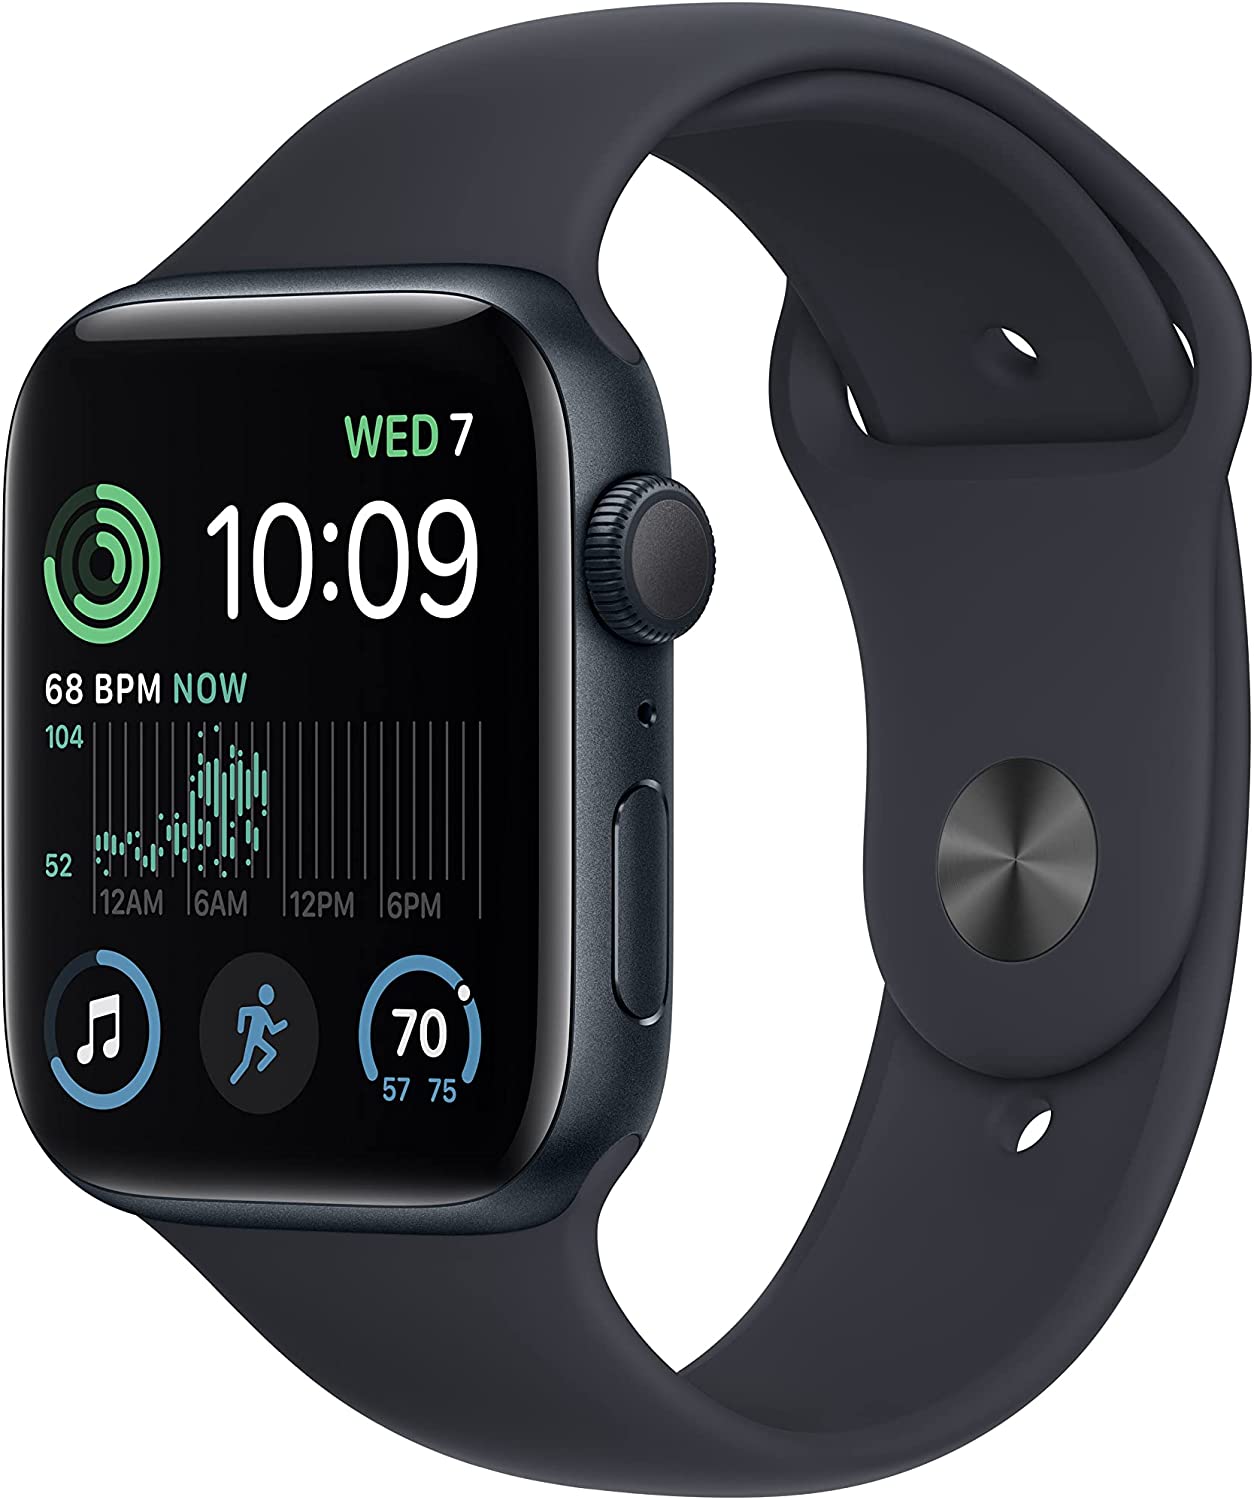 Apple Watch SE (2세대) [GPS 44mm] 미드나잇 알루미늄 케이스 & 미드나잇 스포츠 밴드 포함 스마트 워치 - M/L. 피트니스 & 슬립 트래커, 충돌 감지, 심박수 모니터, 망막 디스플레이, 내수성